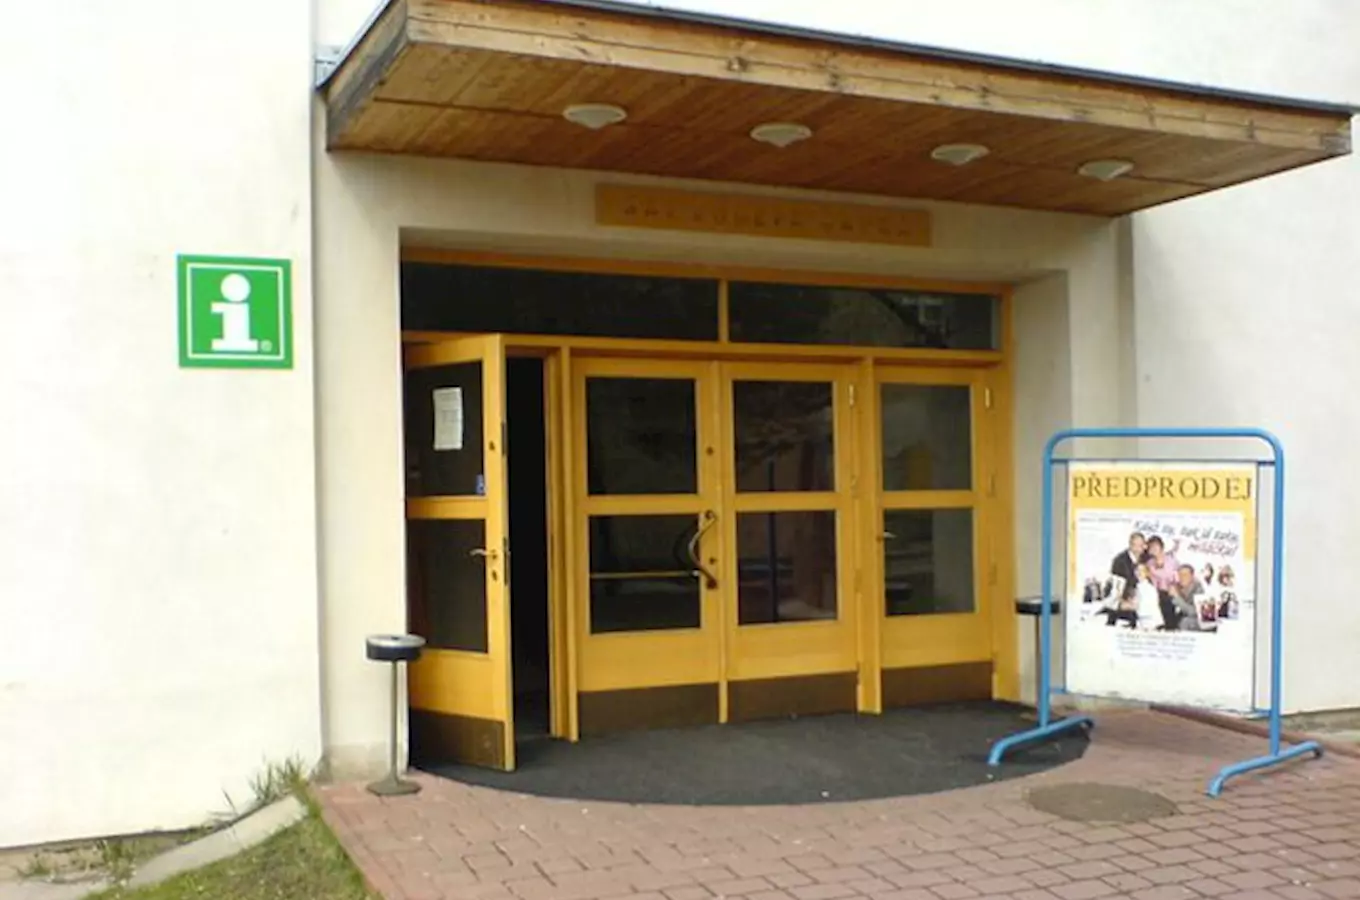 Informační centrum Hronov